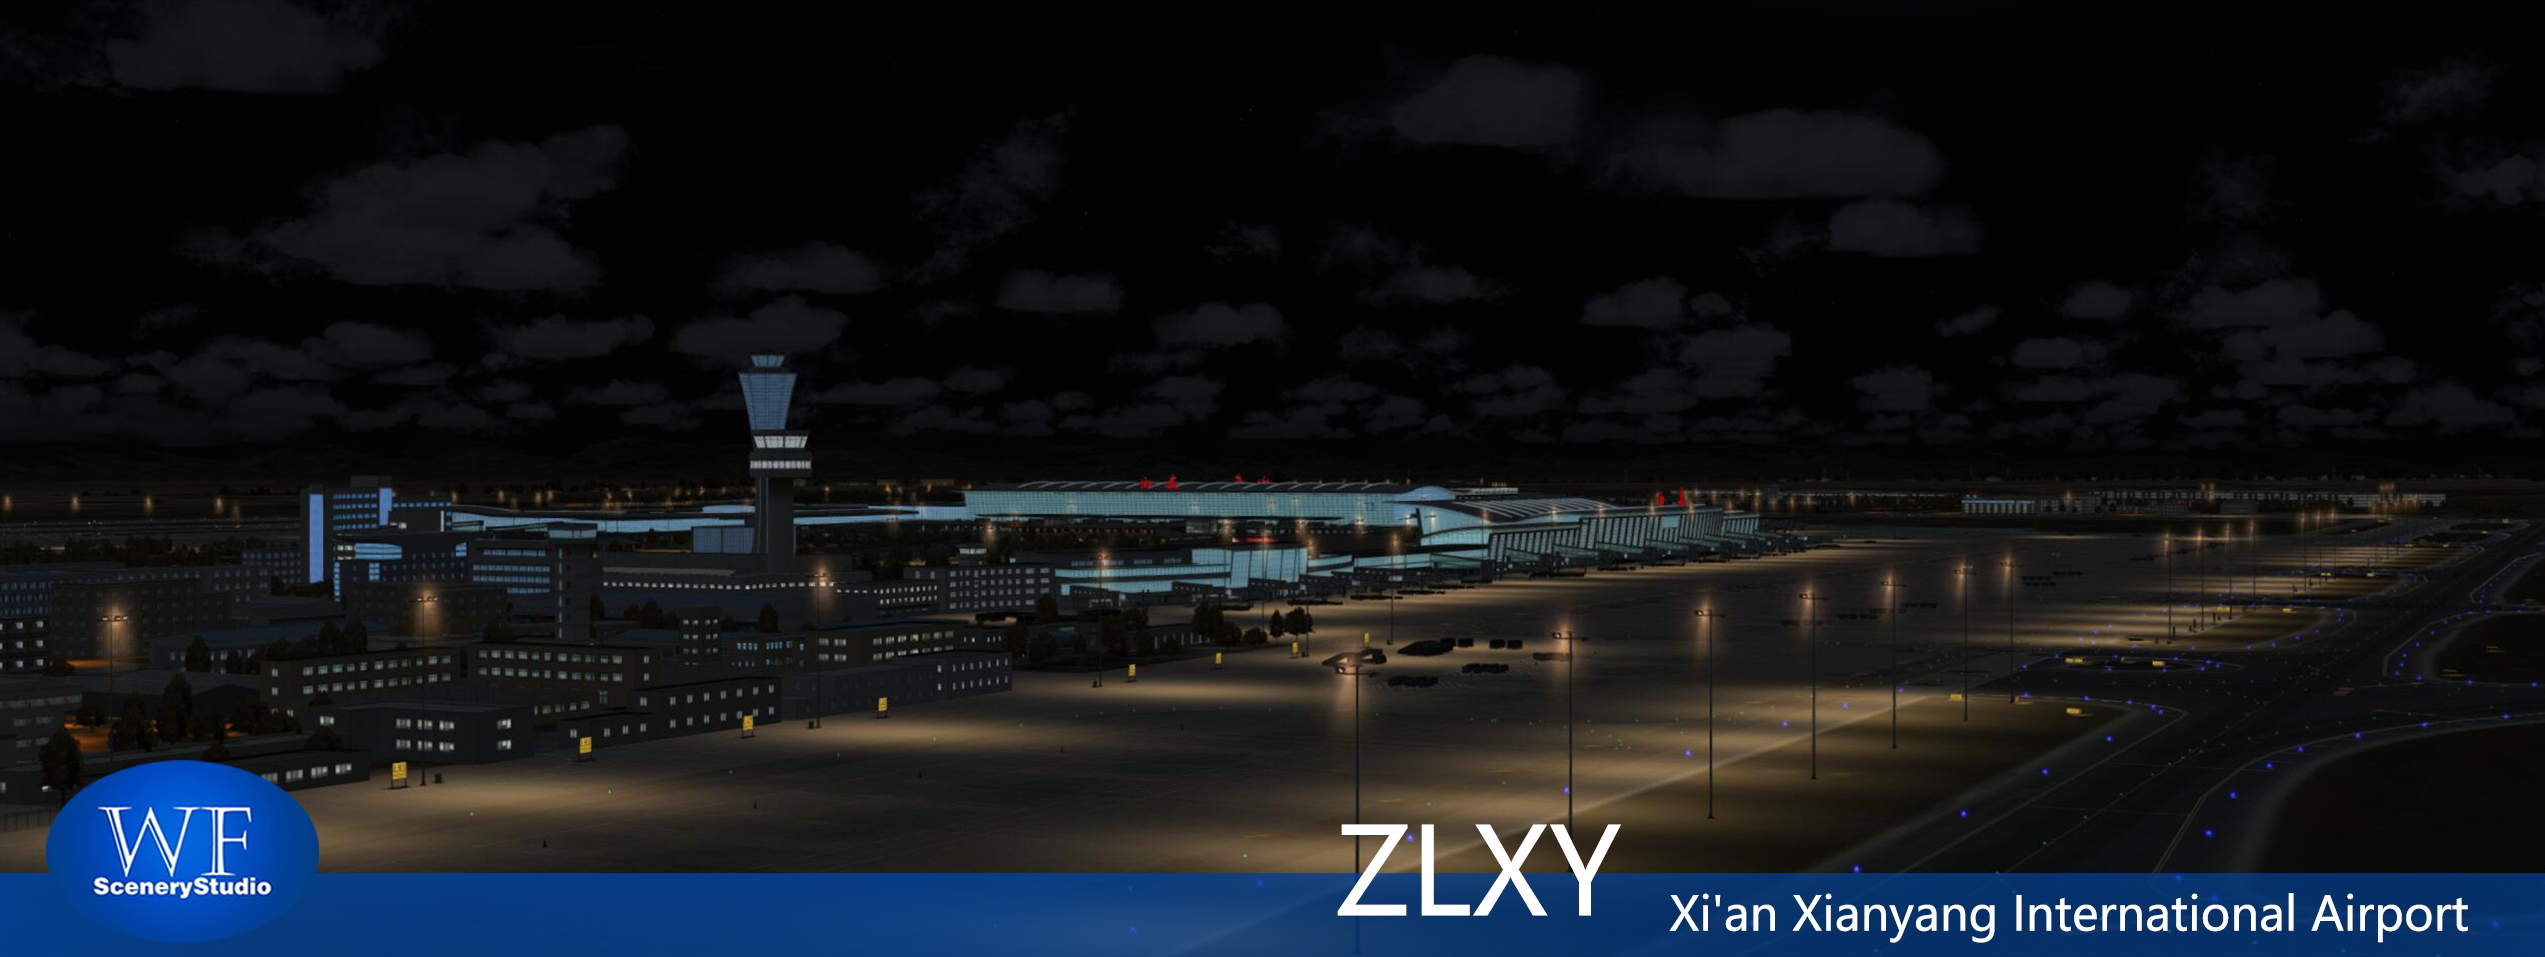 西安咸阳国际机场FSX和P3DV3 版本发布-5448 